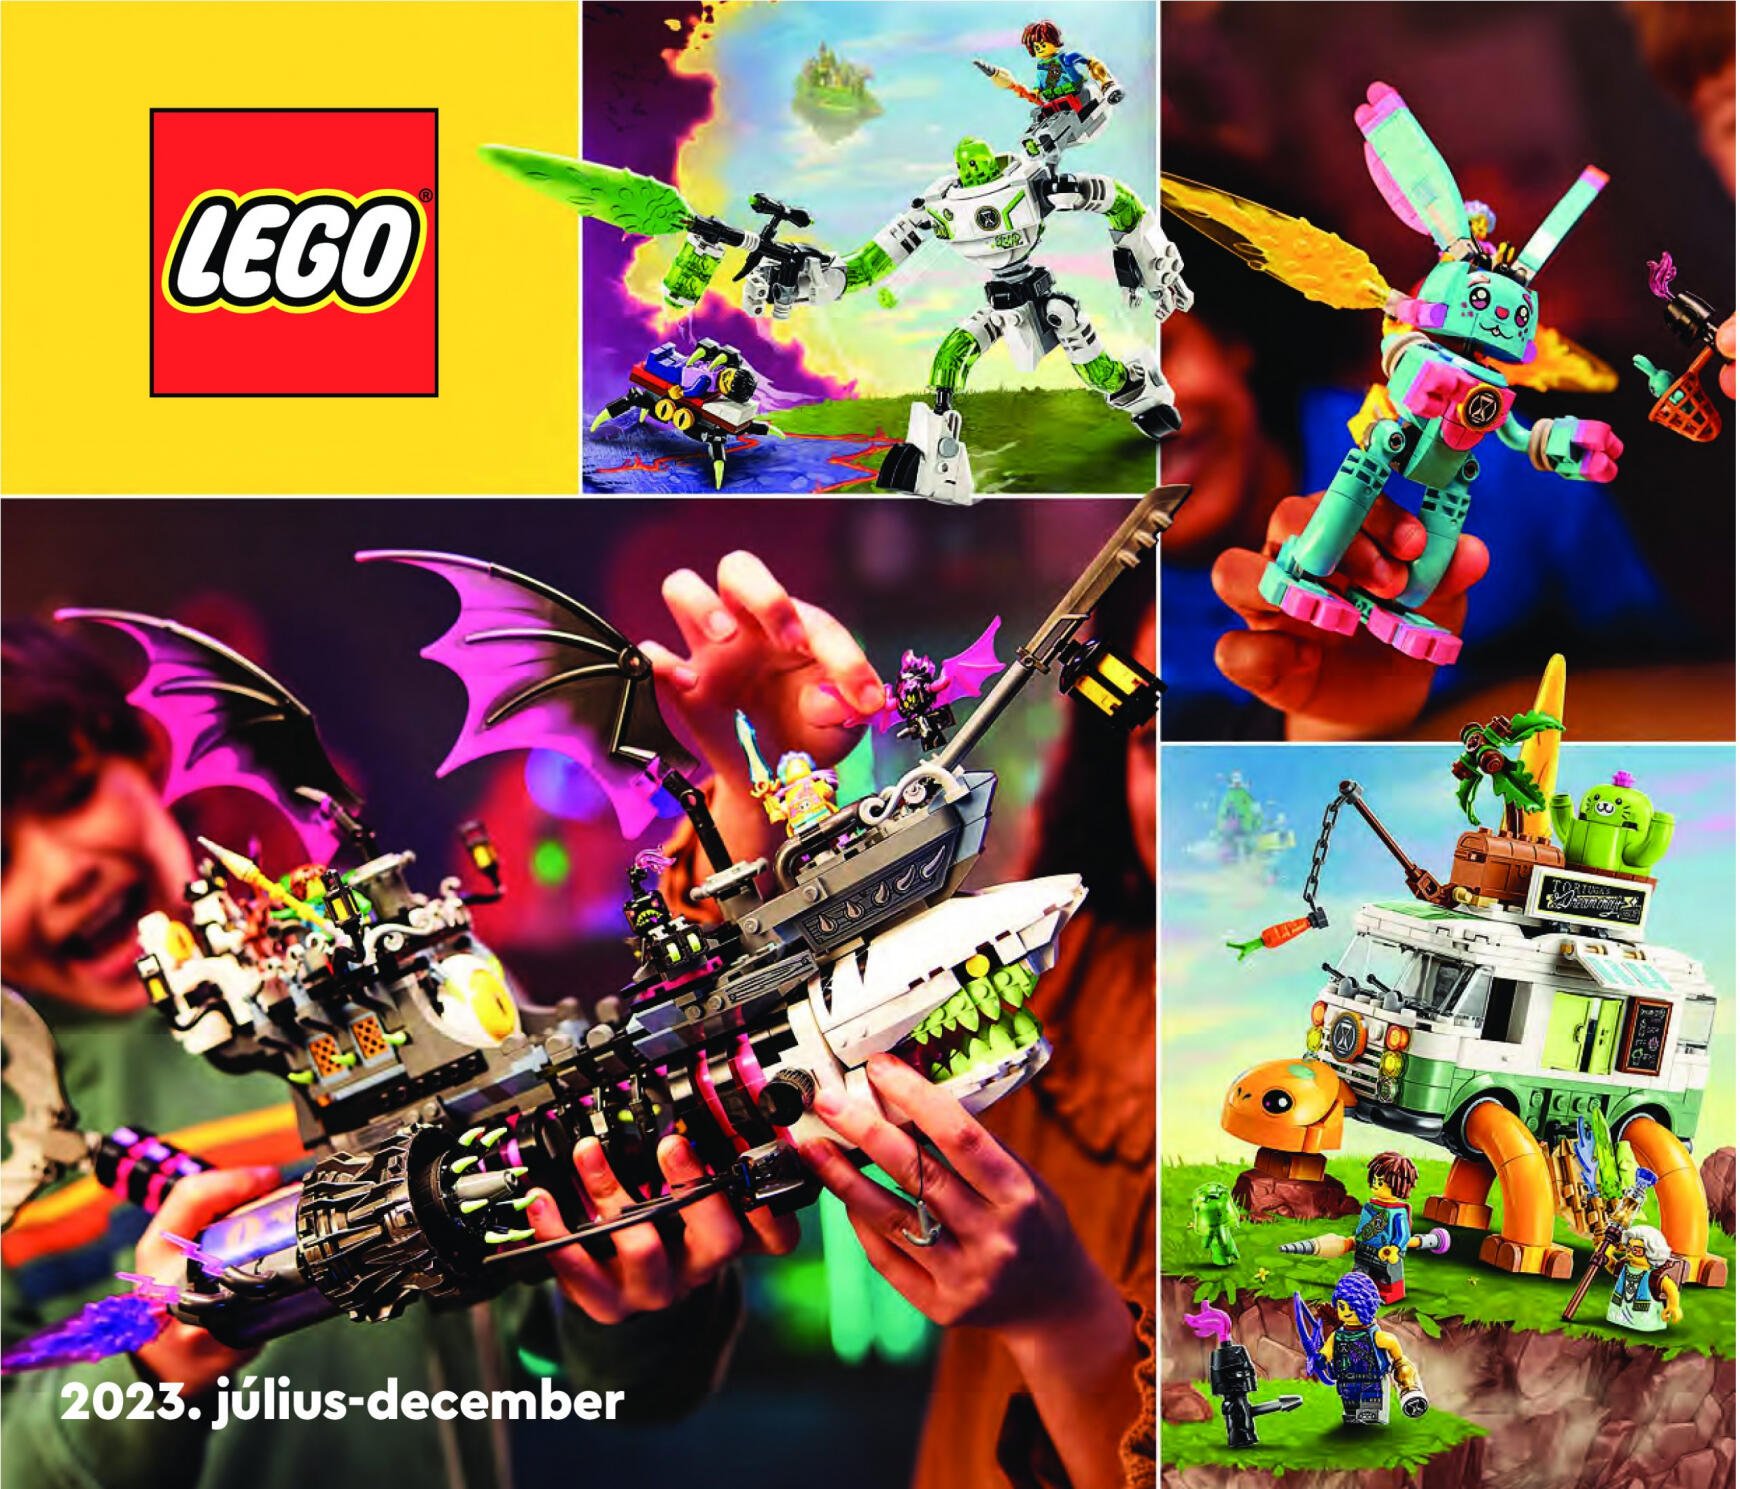 kockaaruhaz - LEGO Katalógus 2023 - page: 1